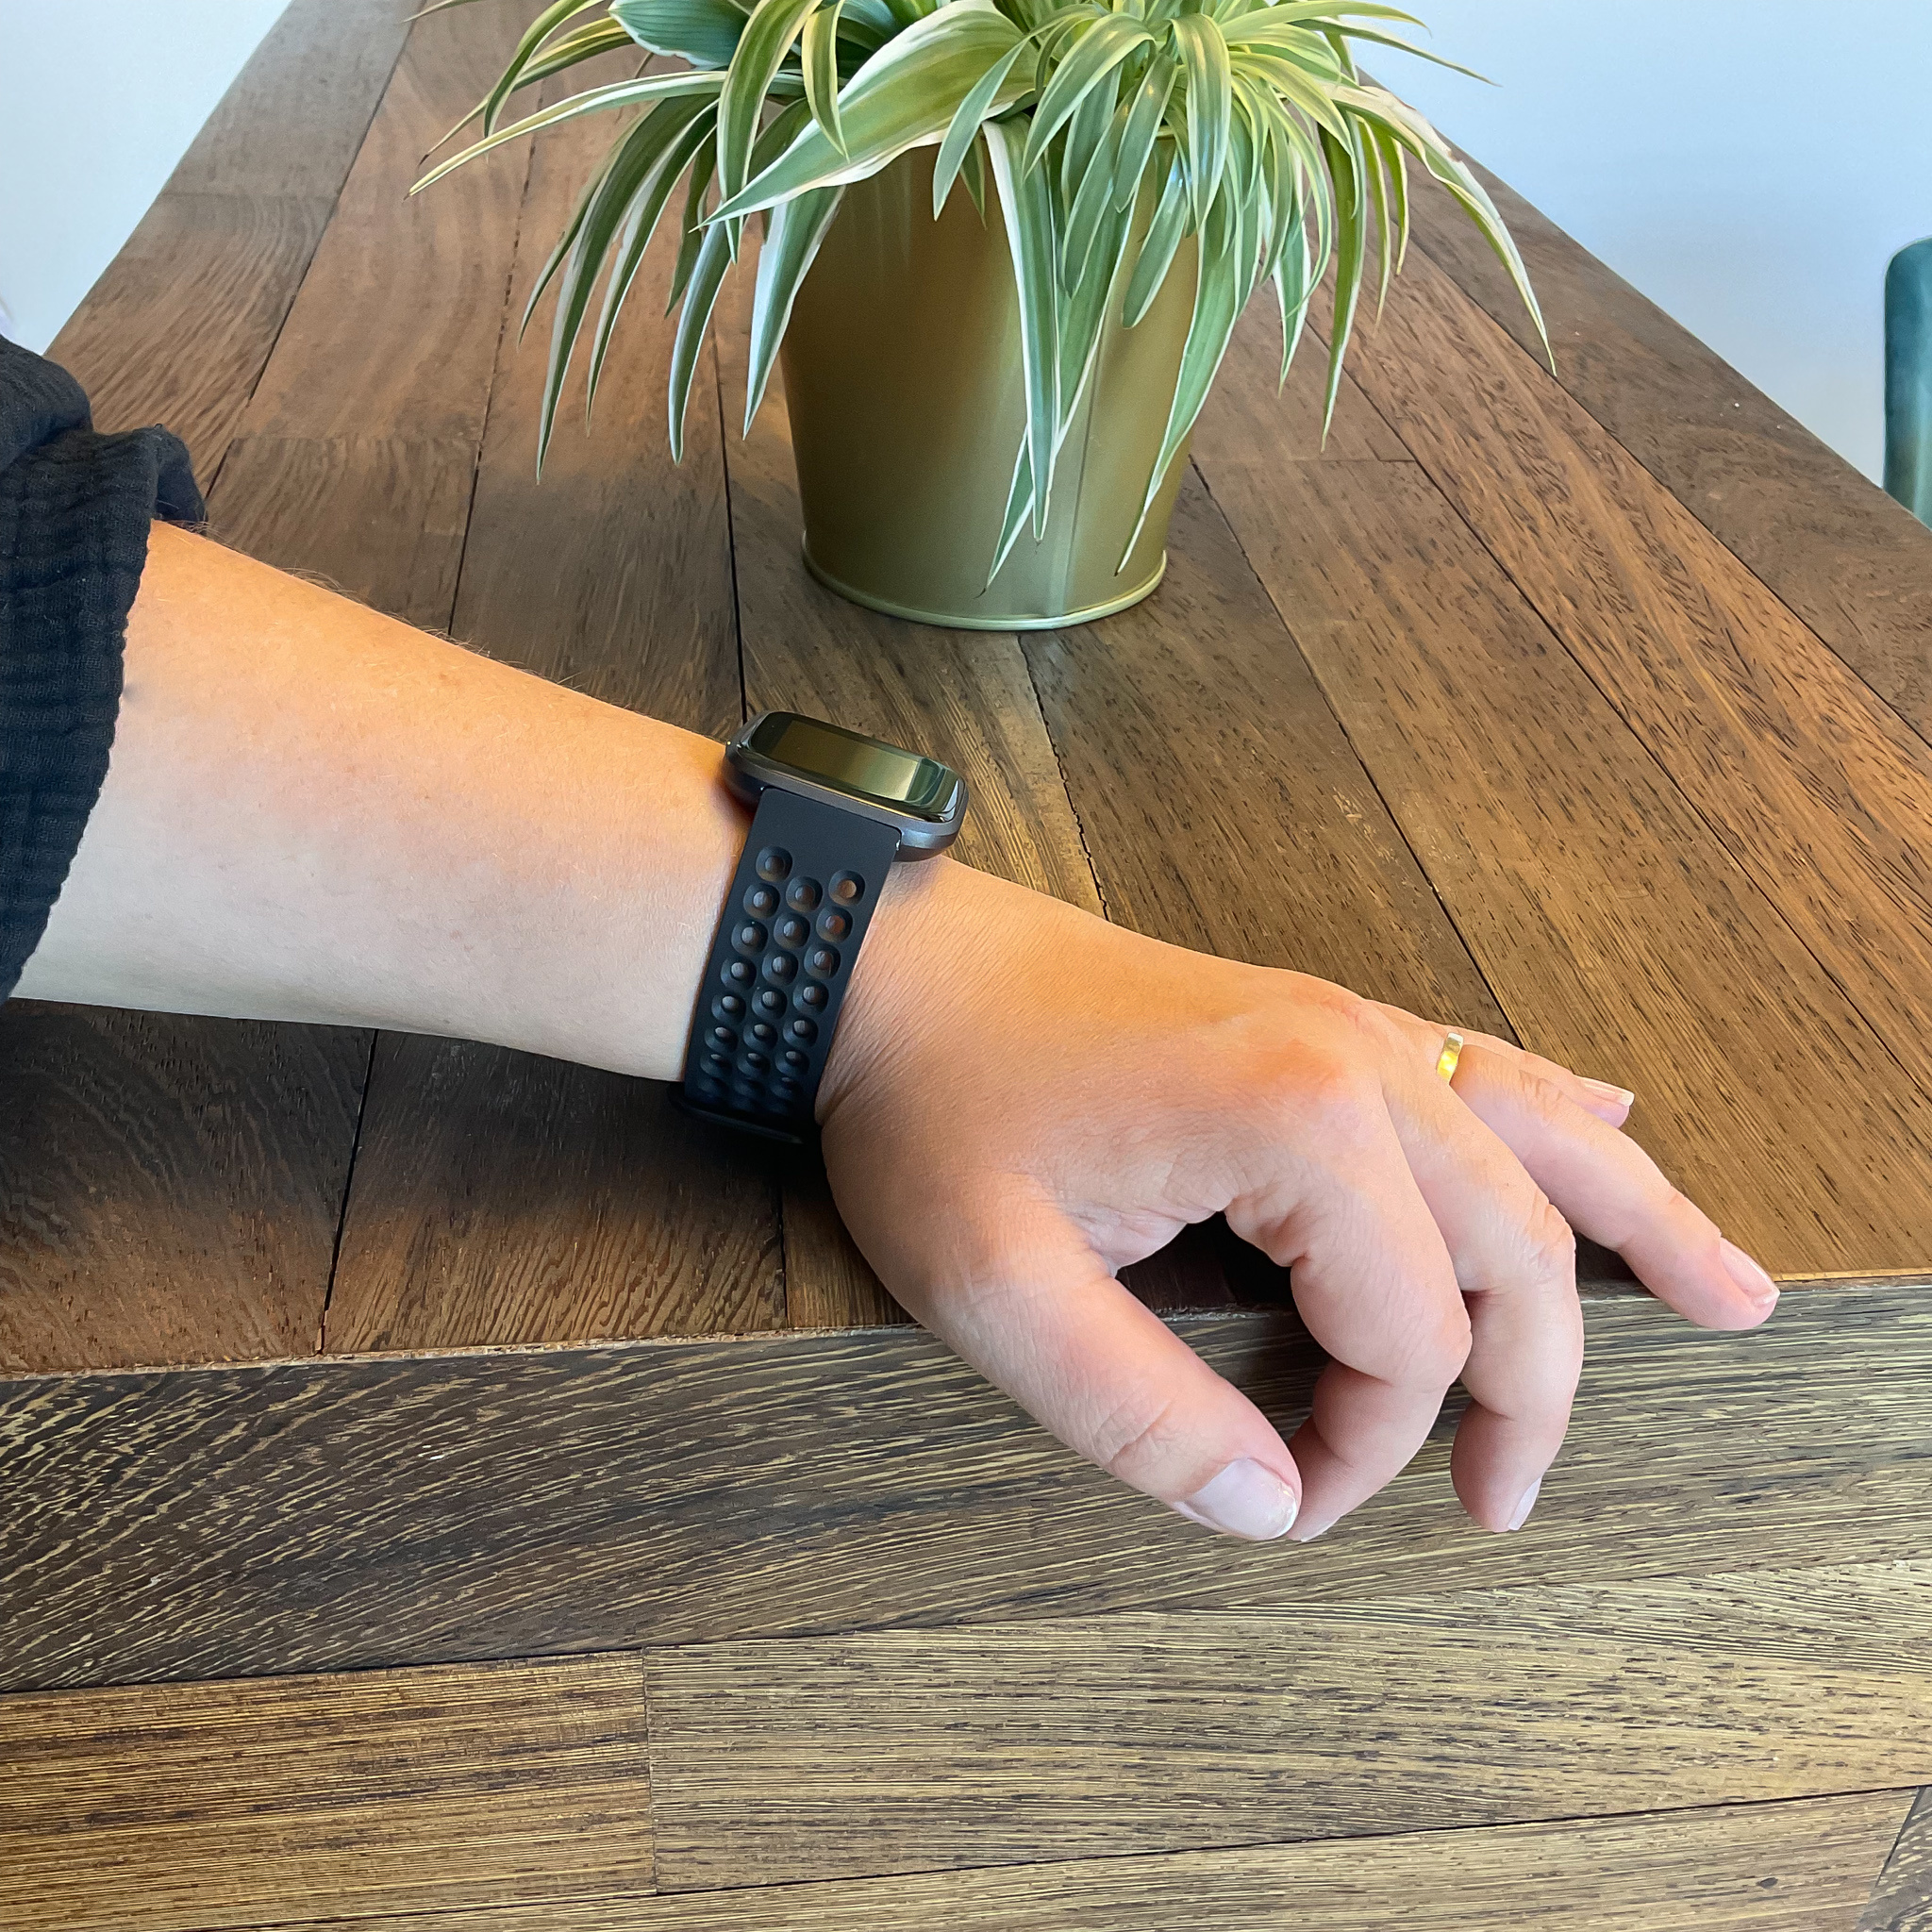 Fitbit Versa sport point Armband - schwarz